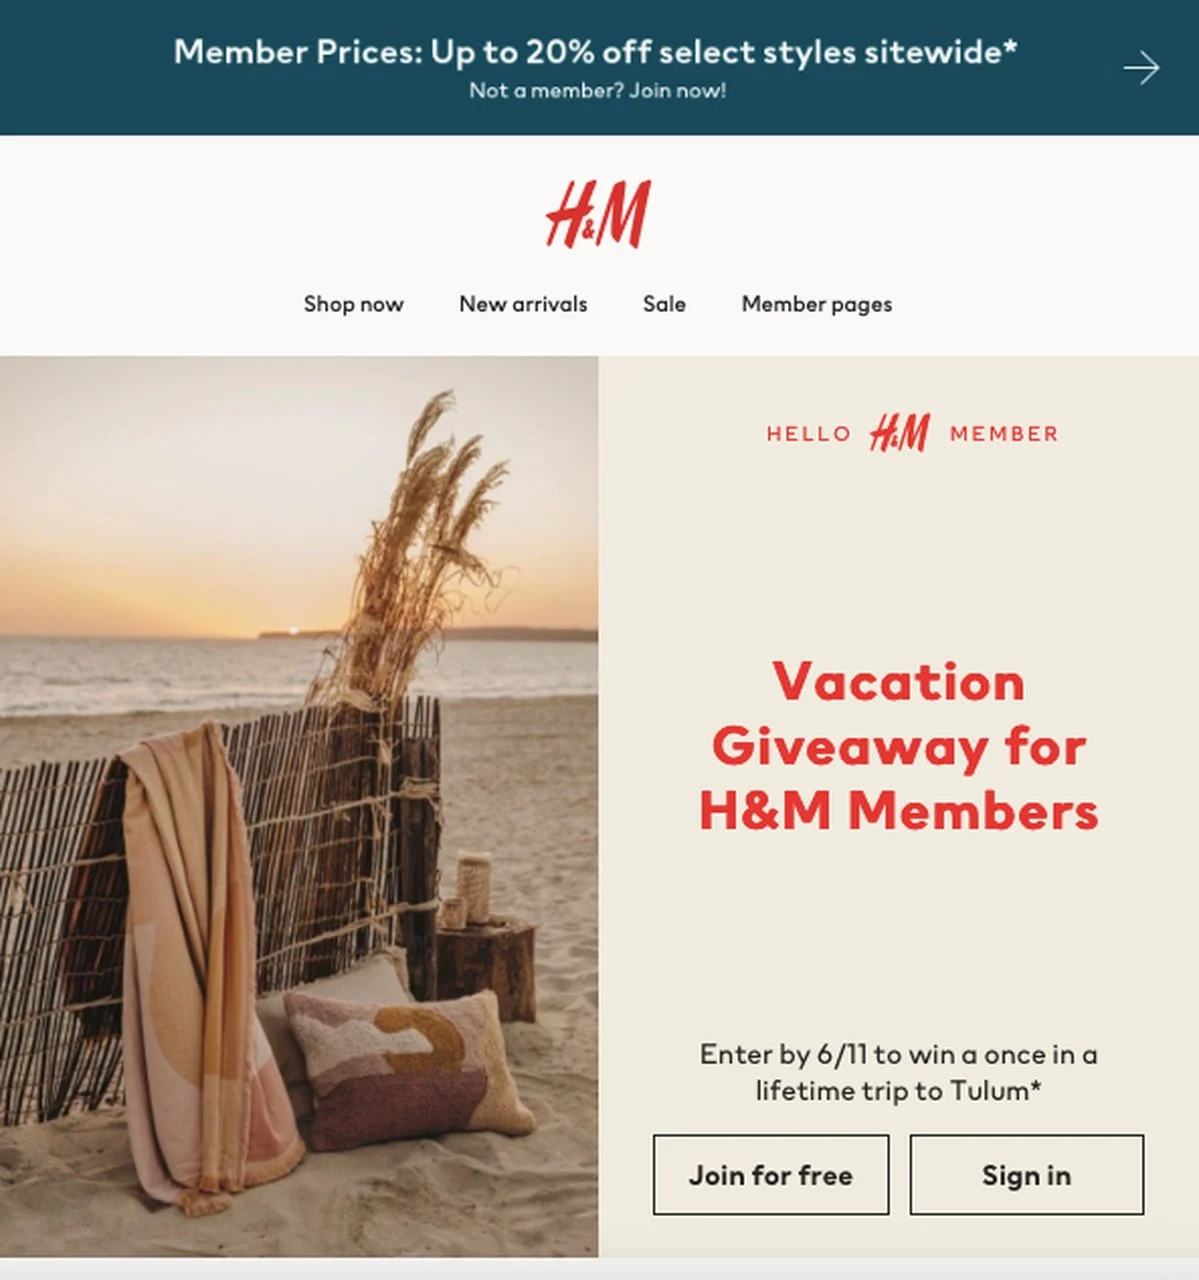 E-mail de oferta exclusivo para membros da H&M